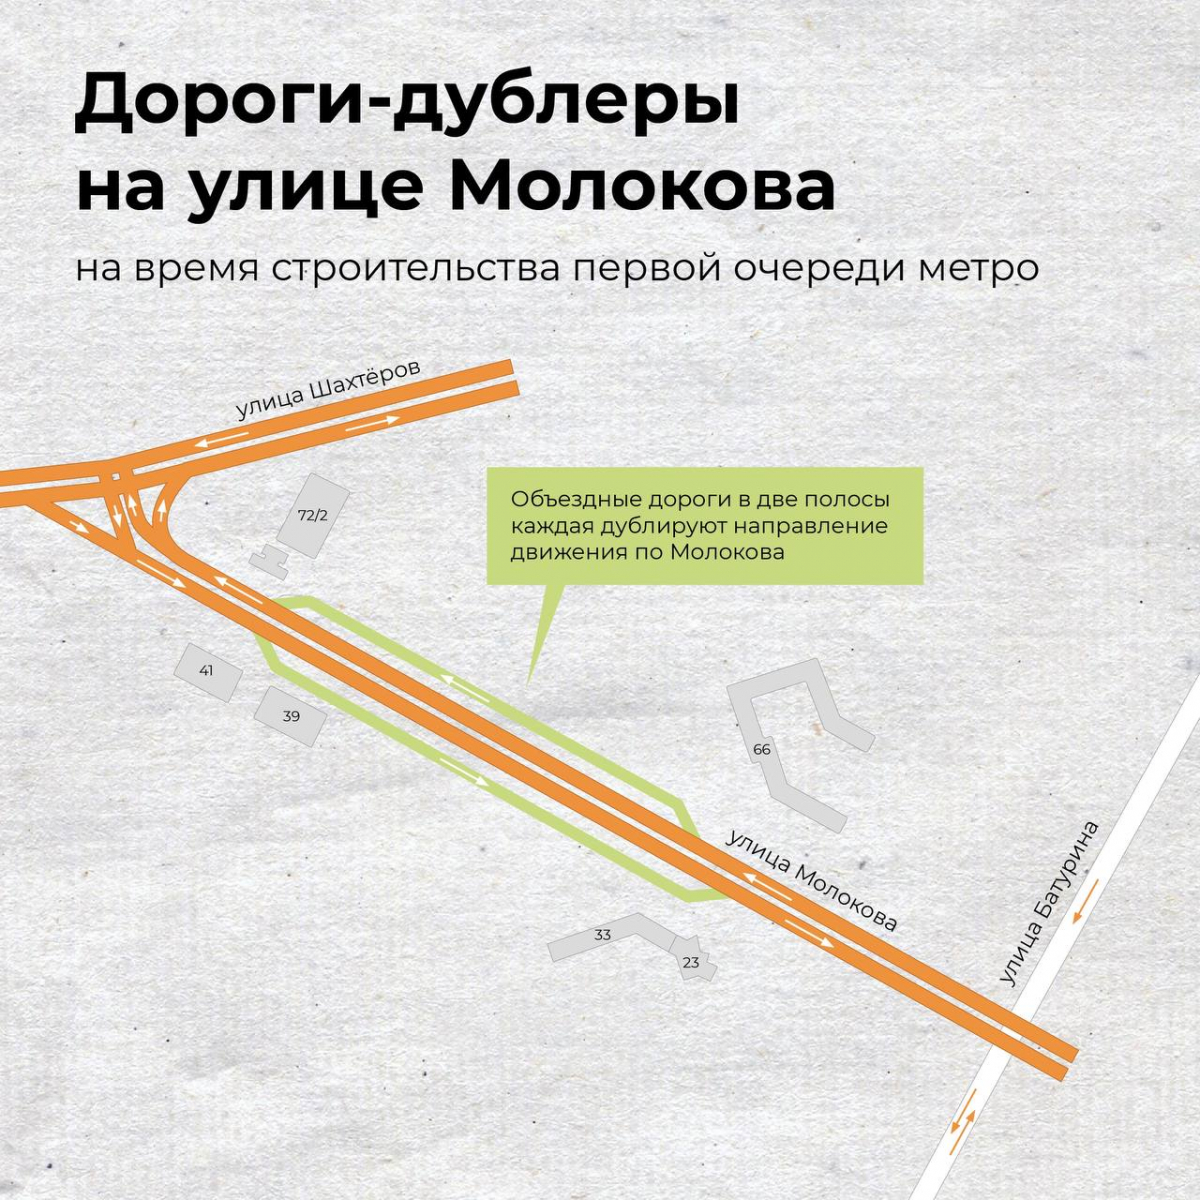 В Красноярске перекрыли улицу Молокова для строительства метро